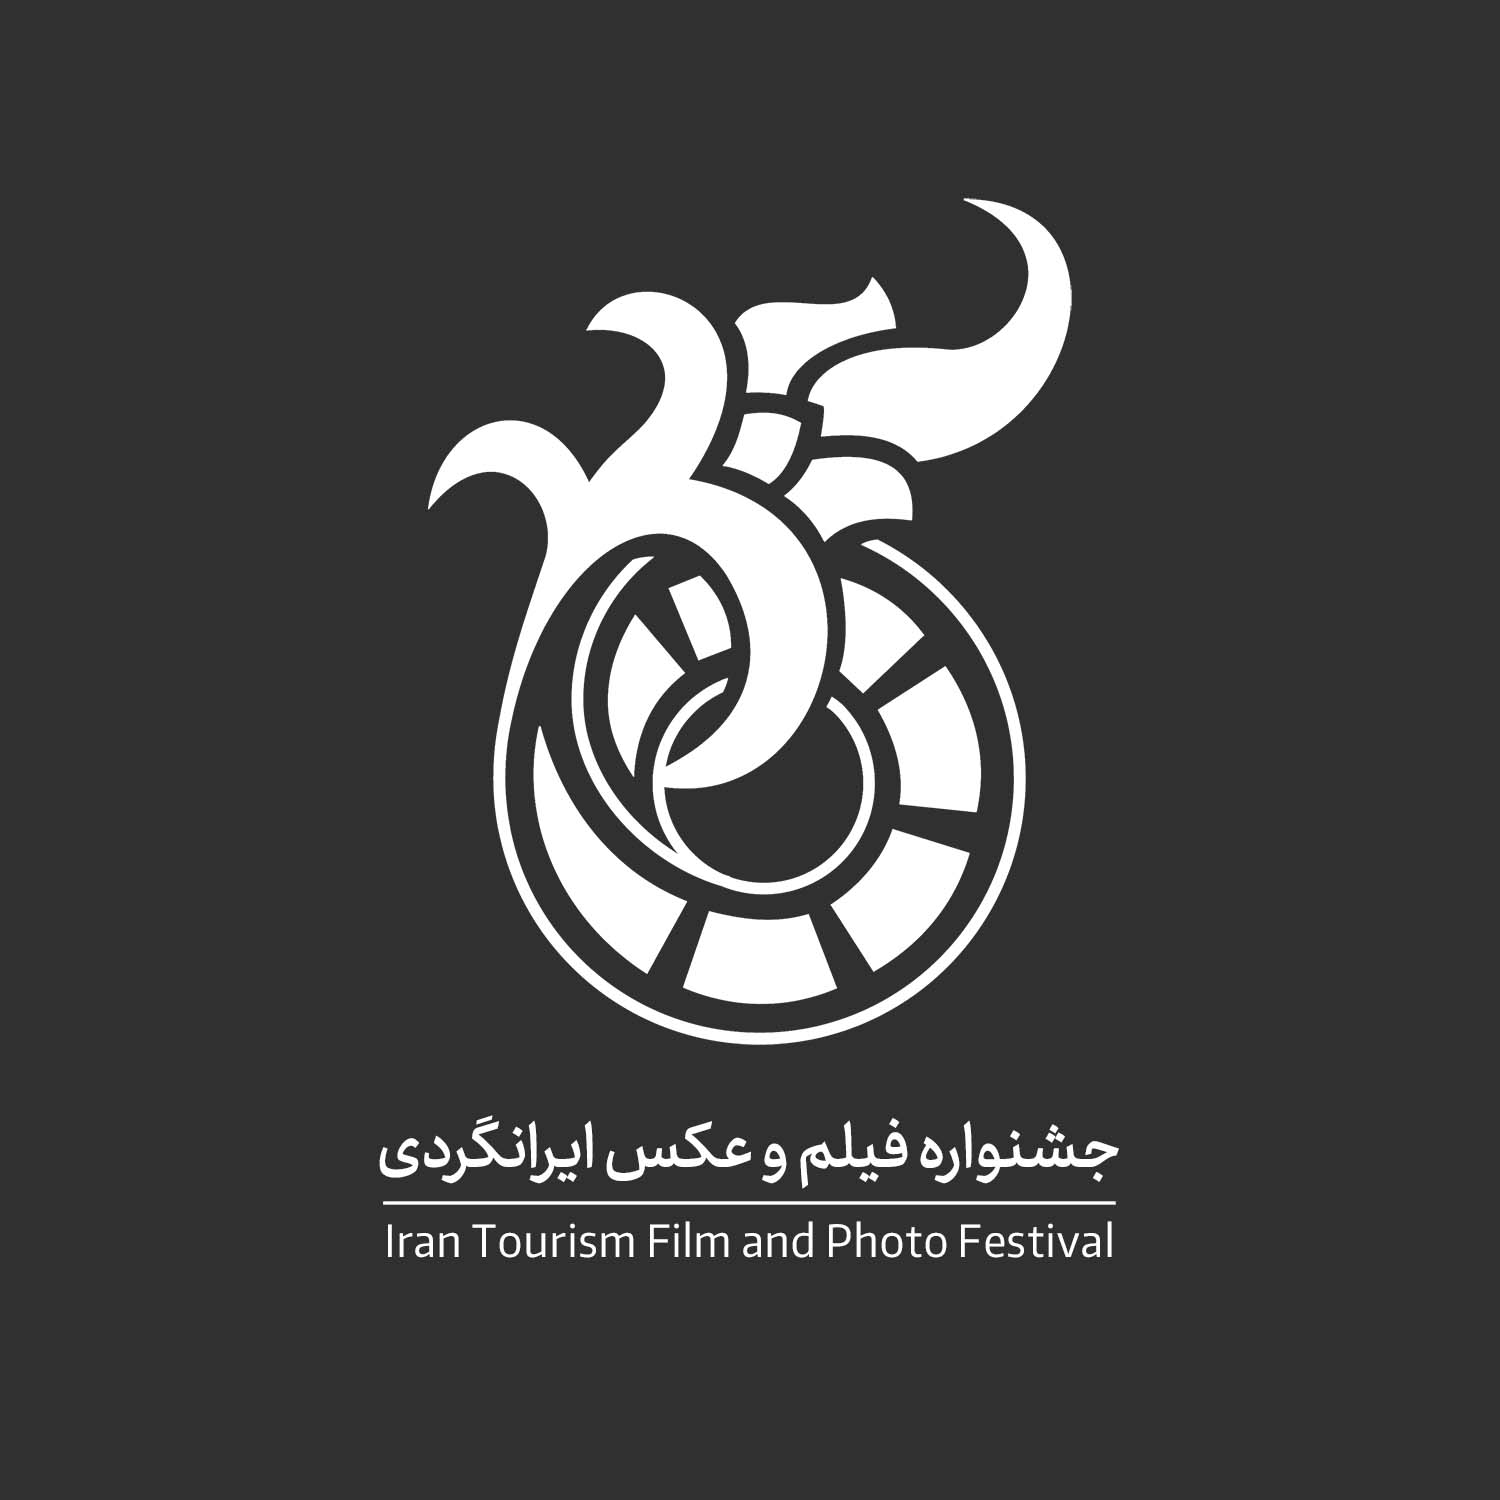 لوگو جشنواره فیلم و عکس ایرانگردی